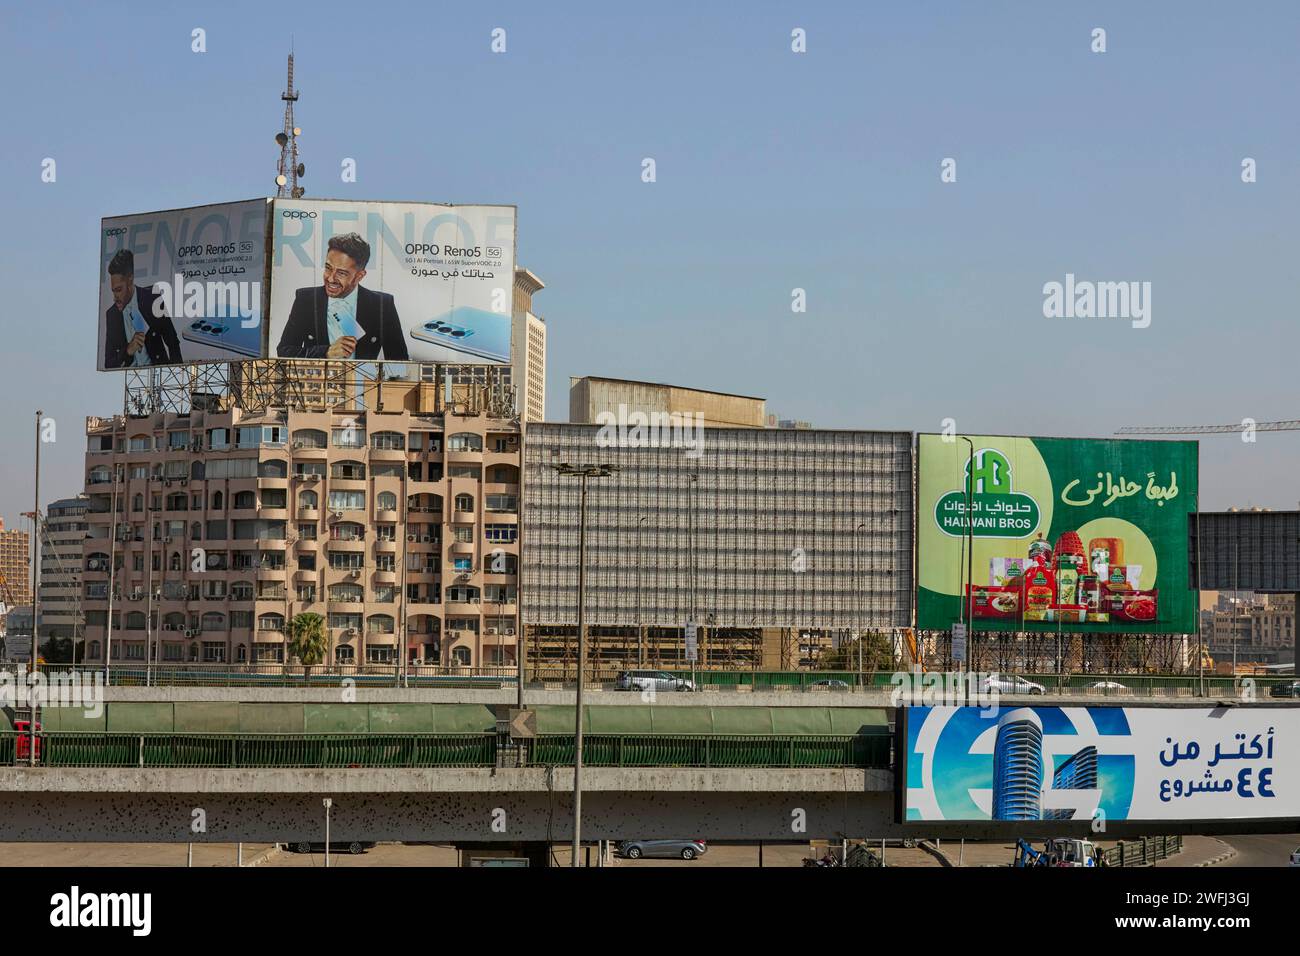 Bâtiments de la rue El Galaa, le Caire, Égypte Banque D'Images